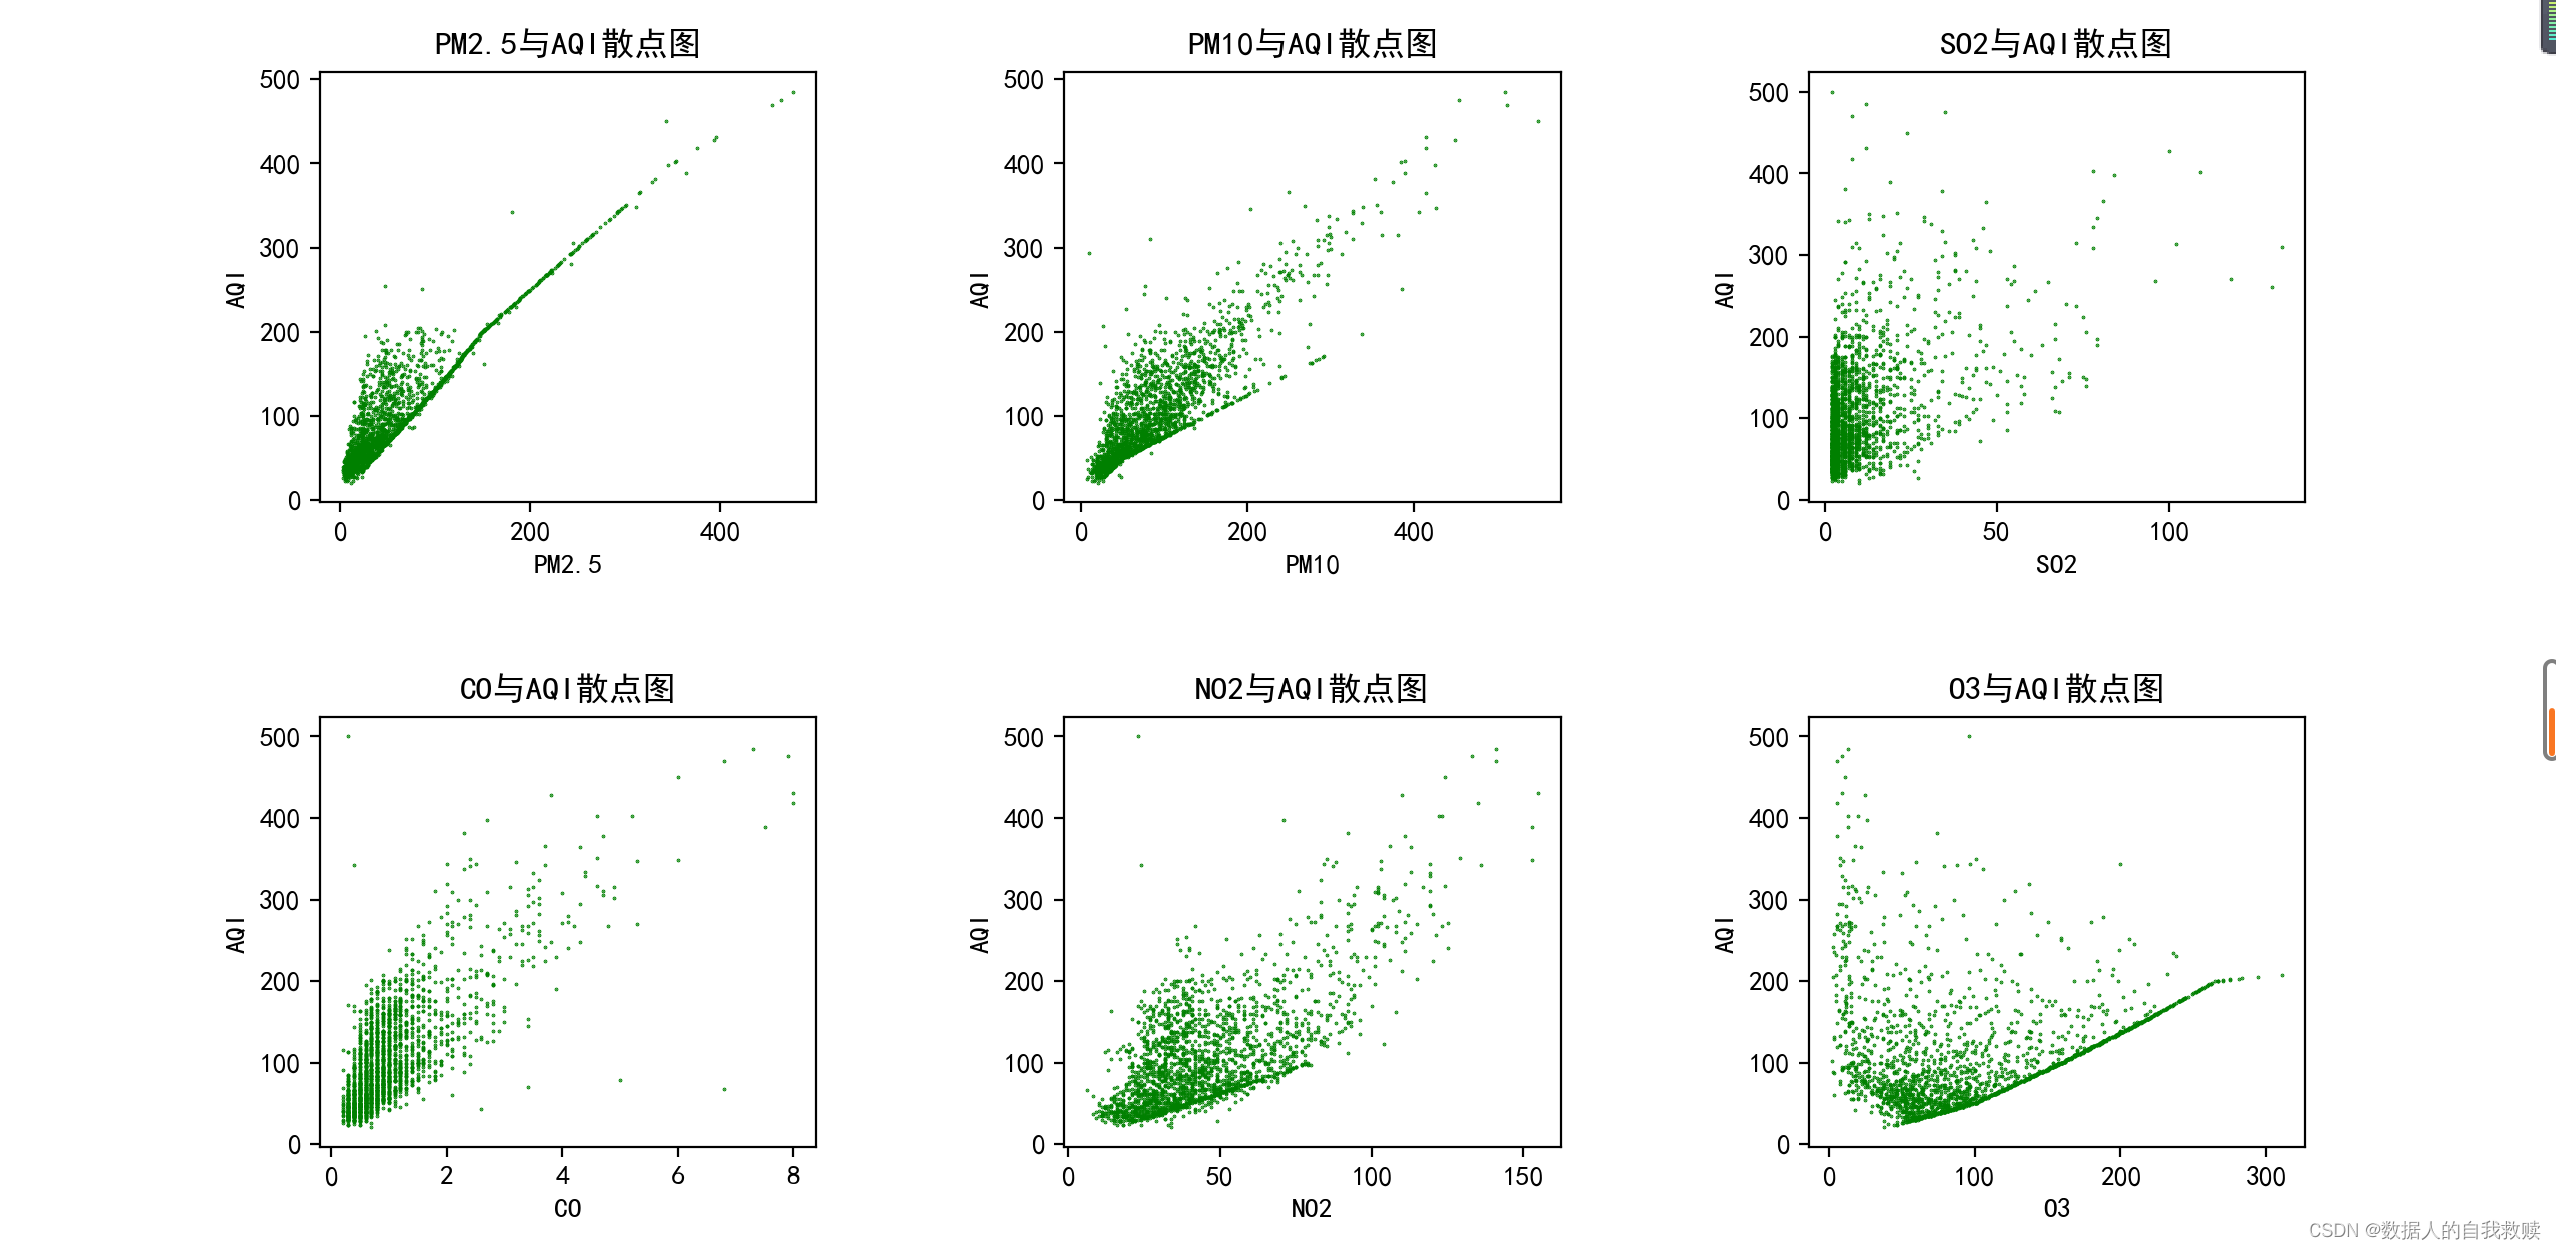 【python与数据分析】实验十三 北京市空气质量